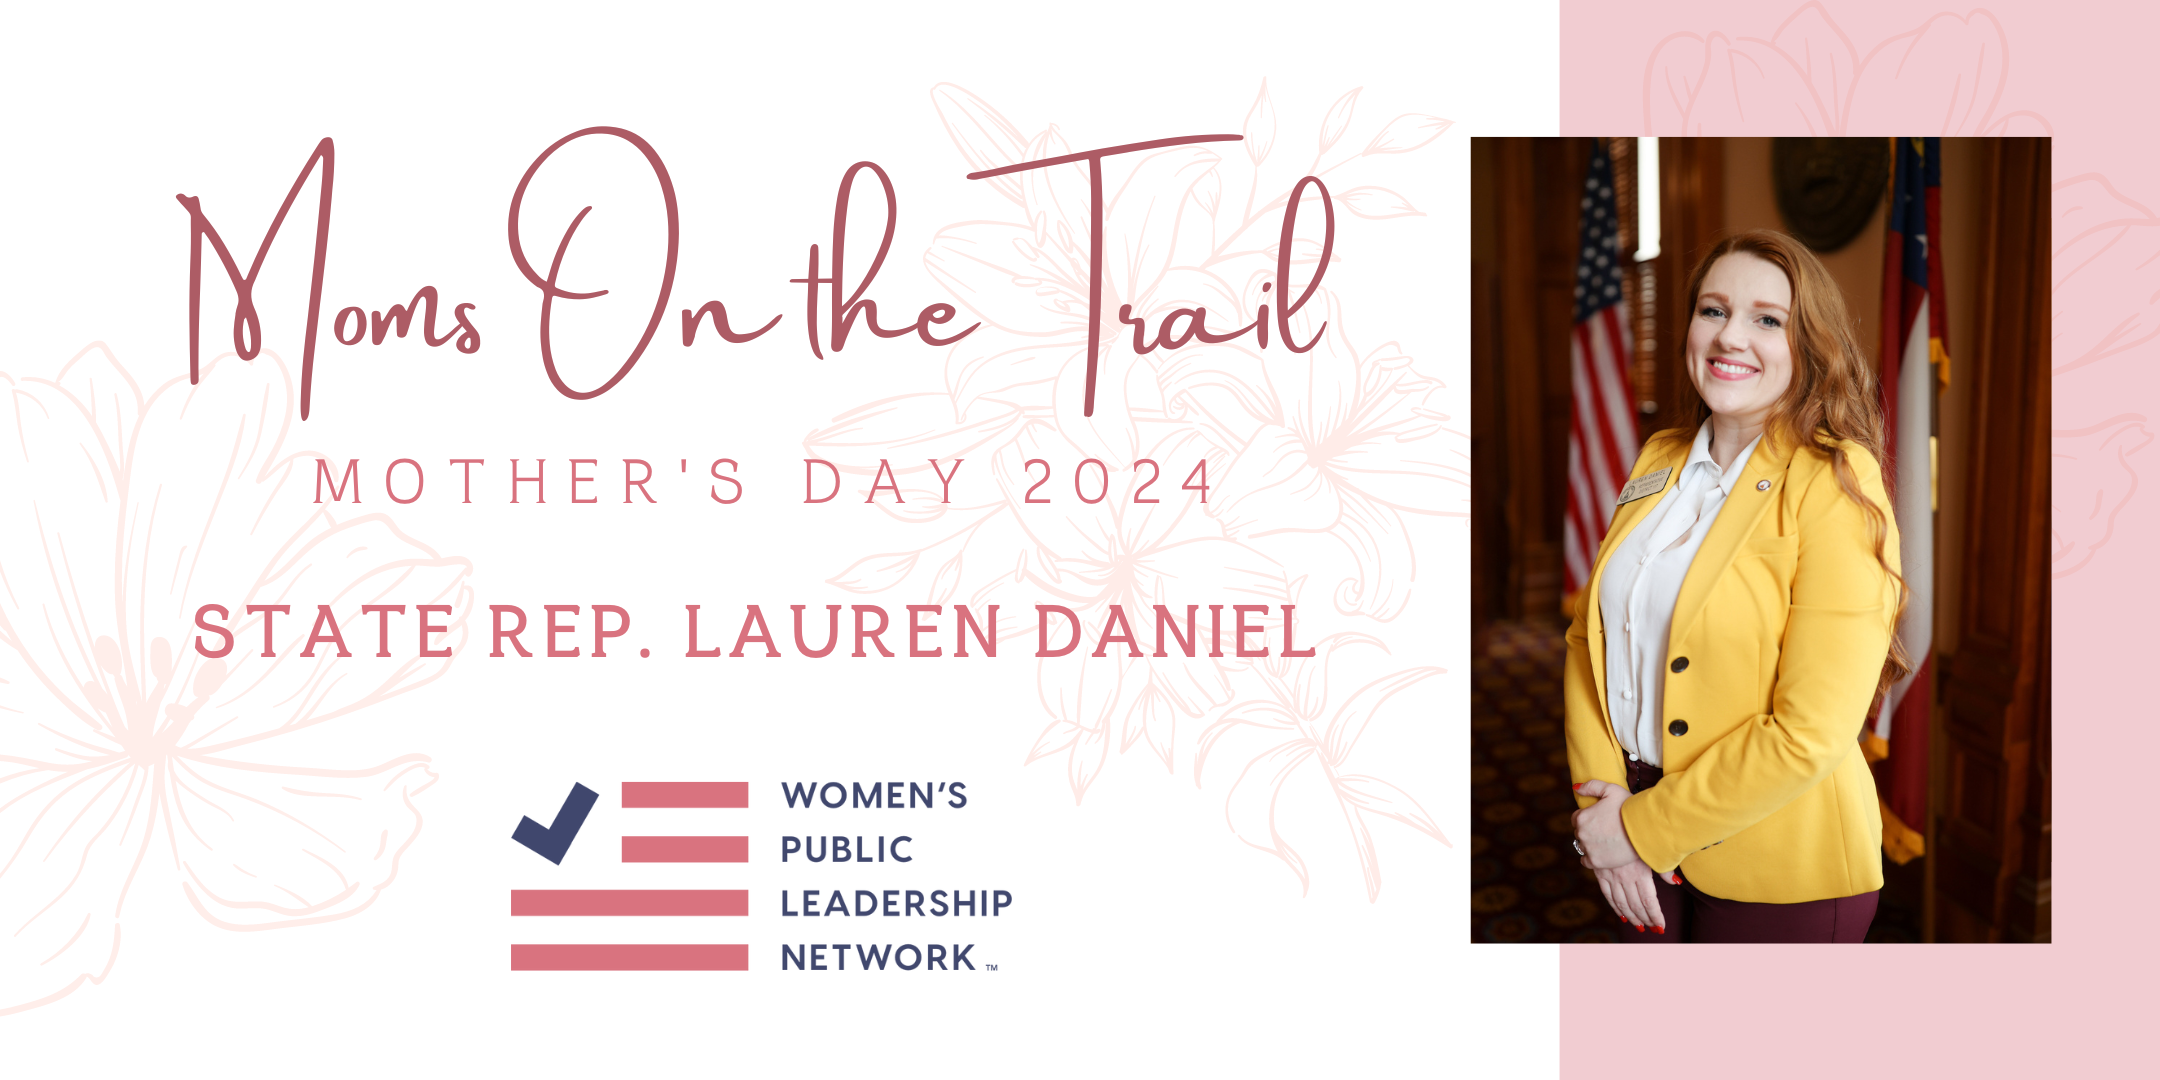 Celebrating Moms On the Trail: Lauren Daniel